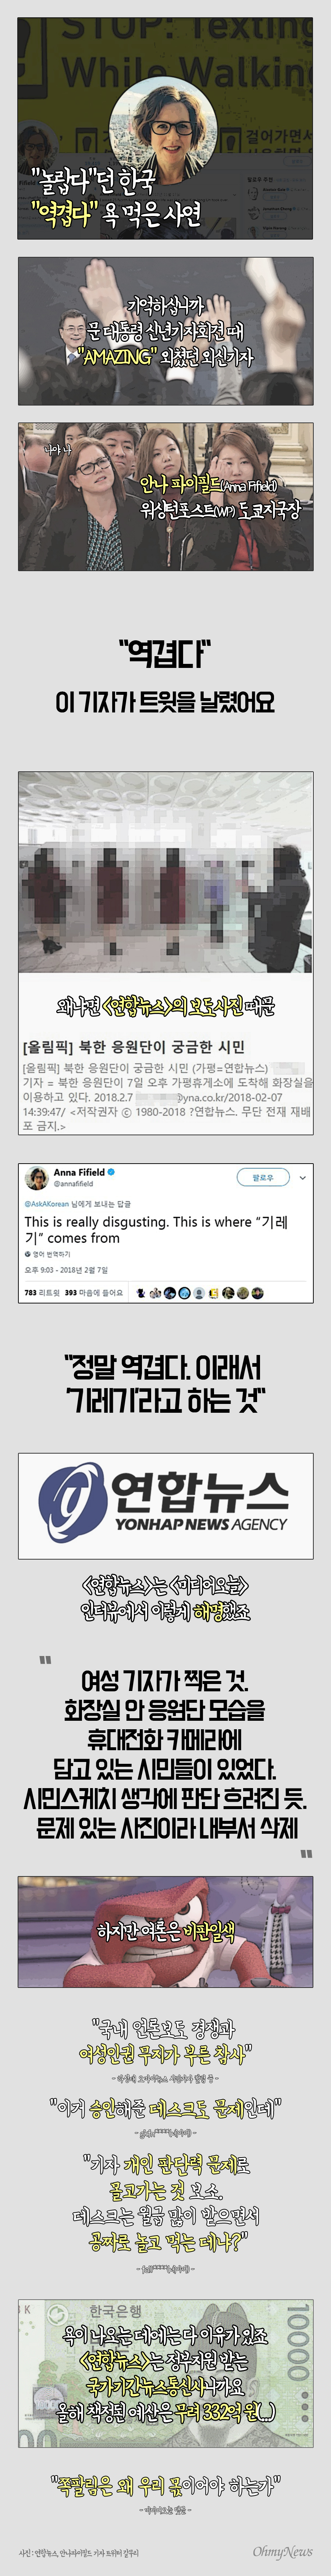 안나 파이필드 <워싱턴포스트> 도쿄지국장의 일침, 한국언론 바뀌어야 합니다(ㅠㅠ)